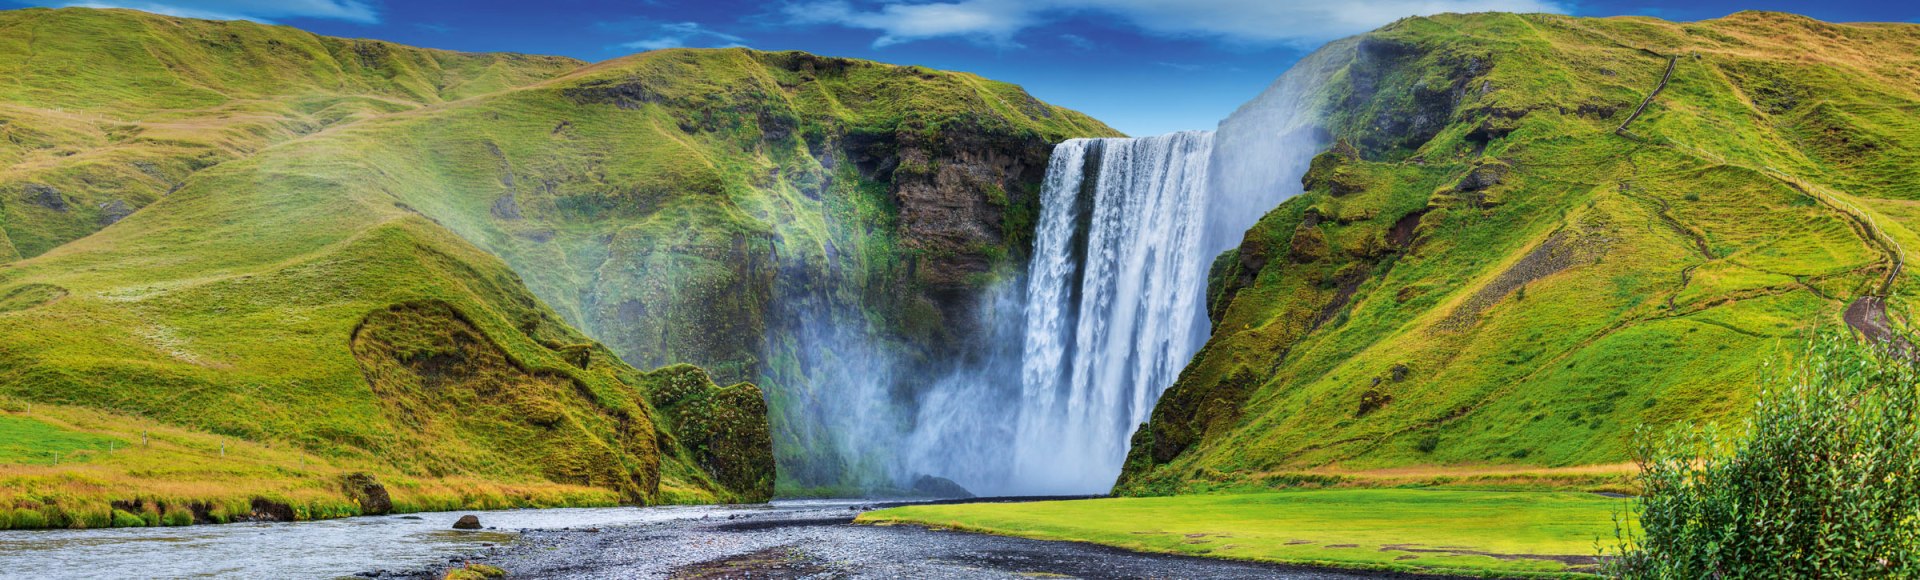 Der Skógafoss Wasserfall auf Island, © Max Topchii - Fotolia.com